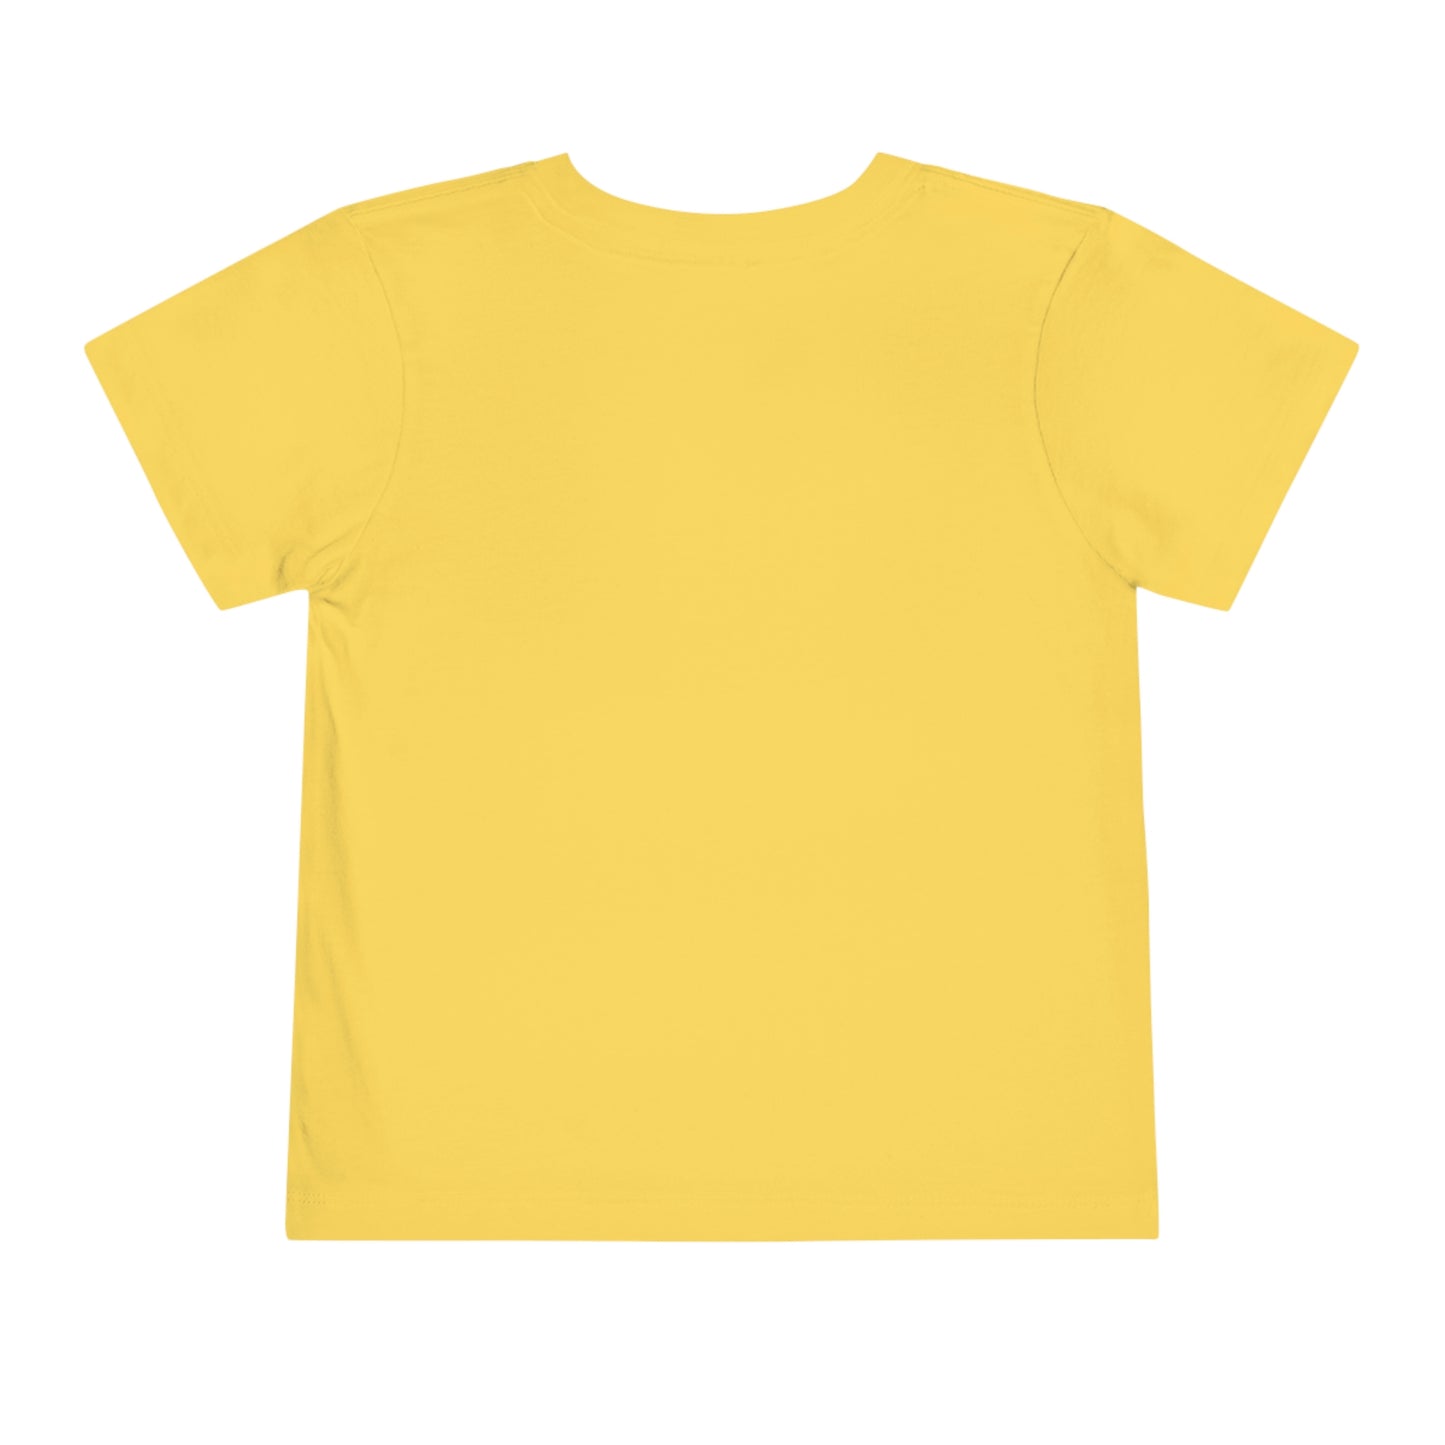 Orca Heart Toddler T-shirt